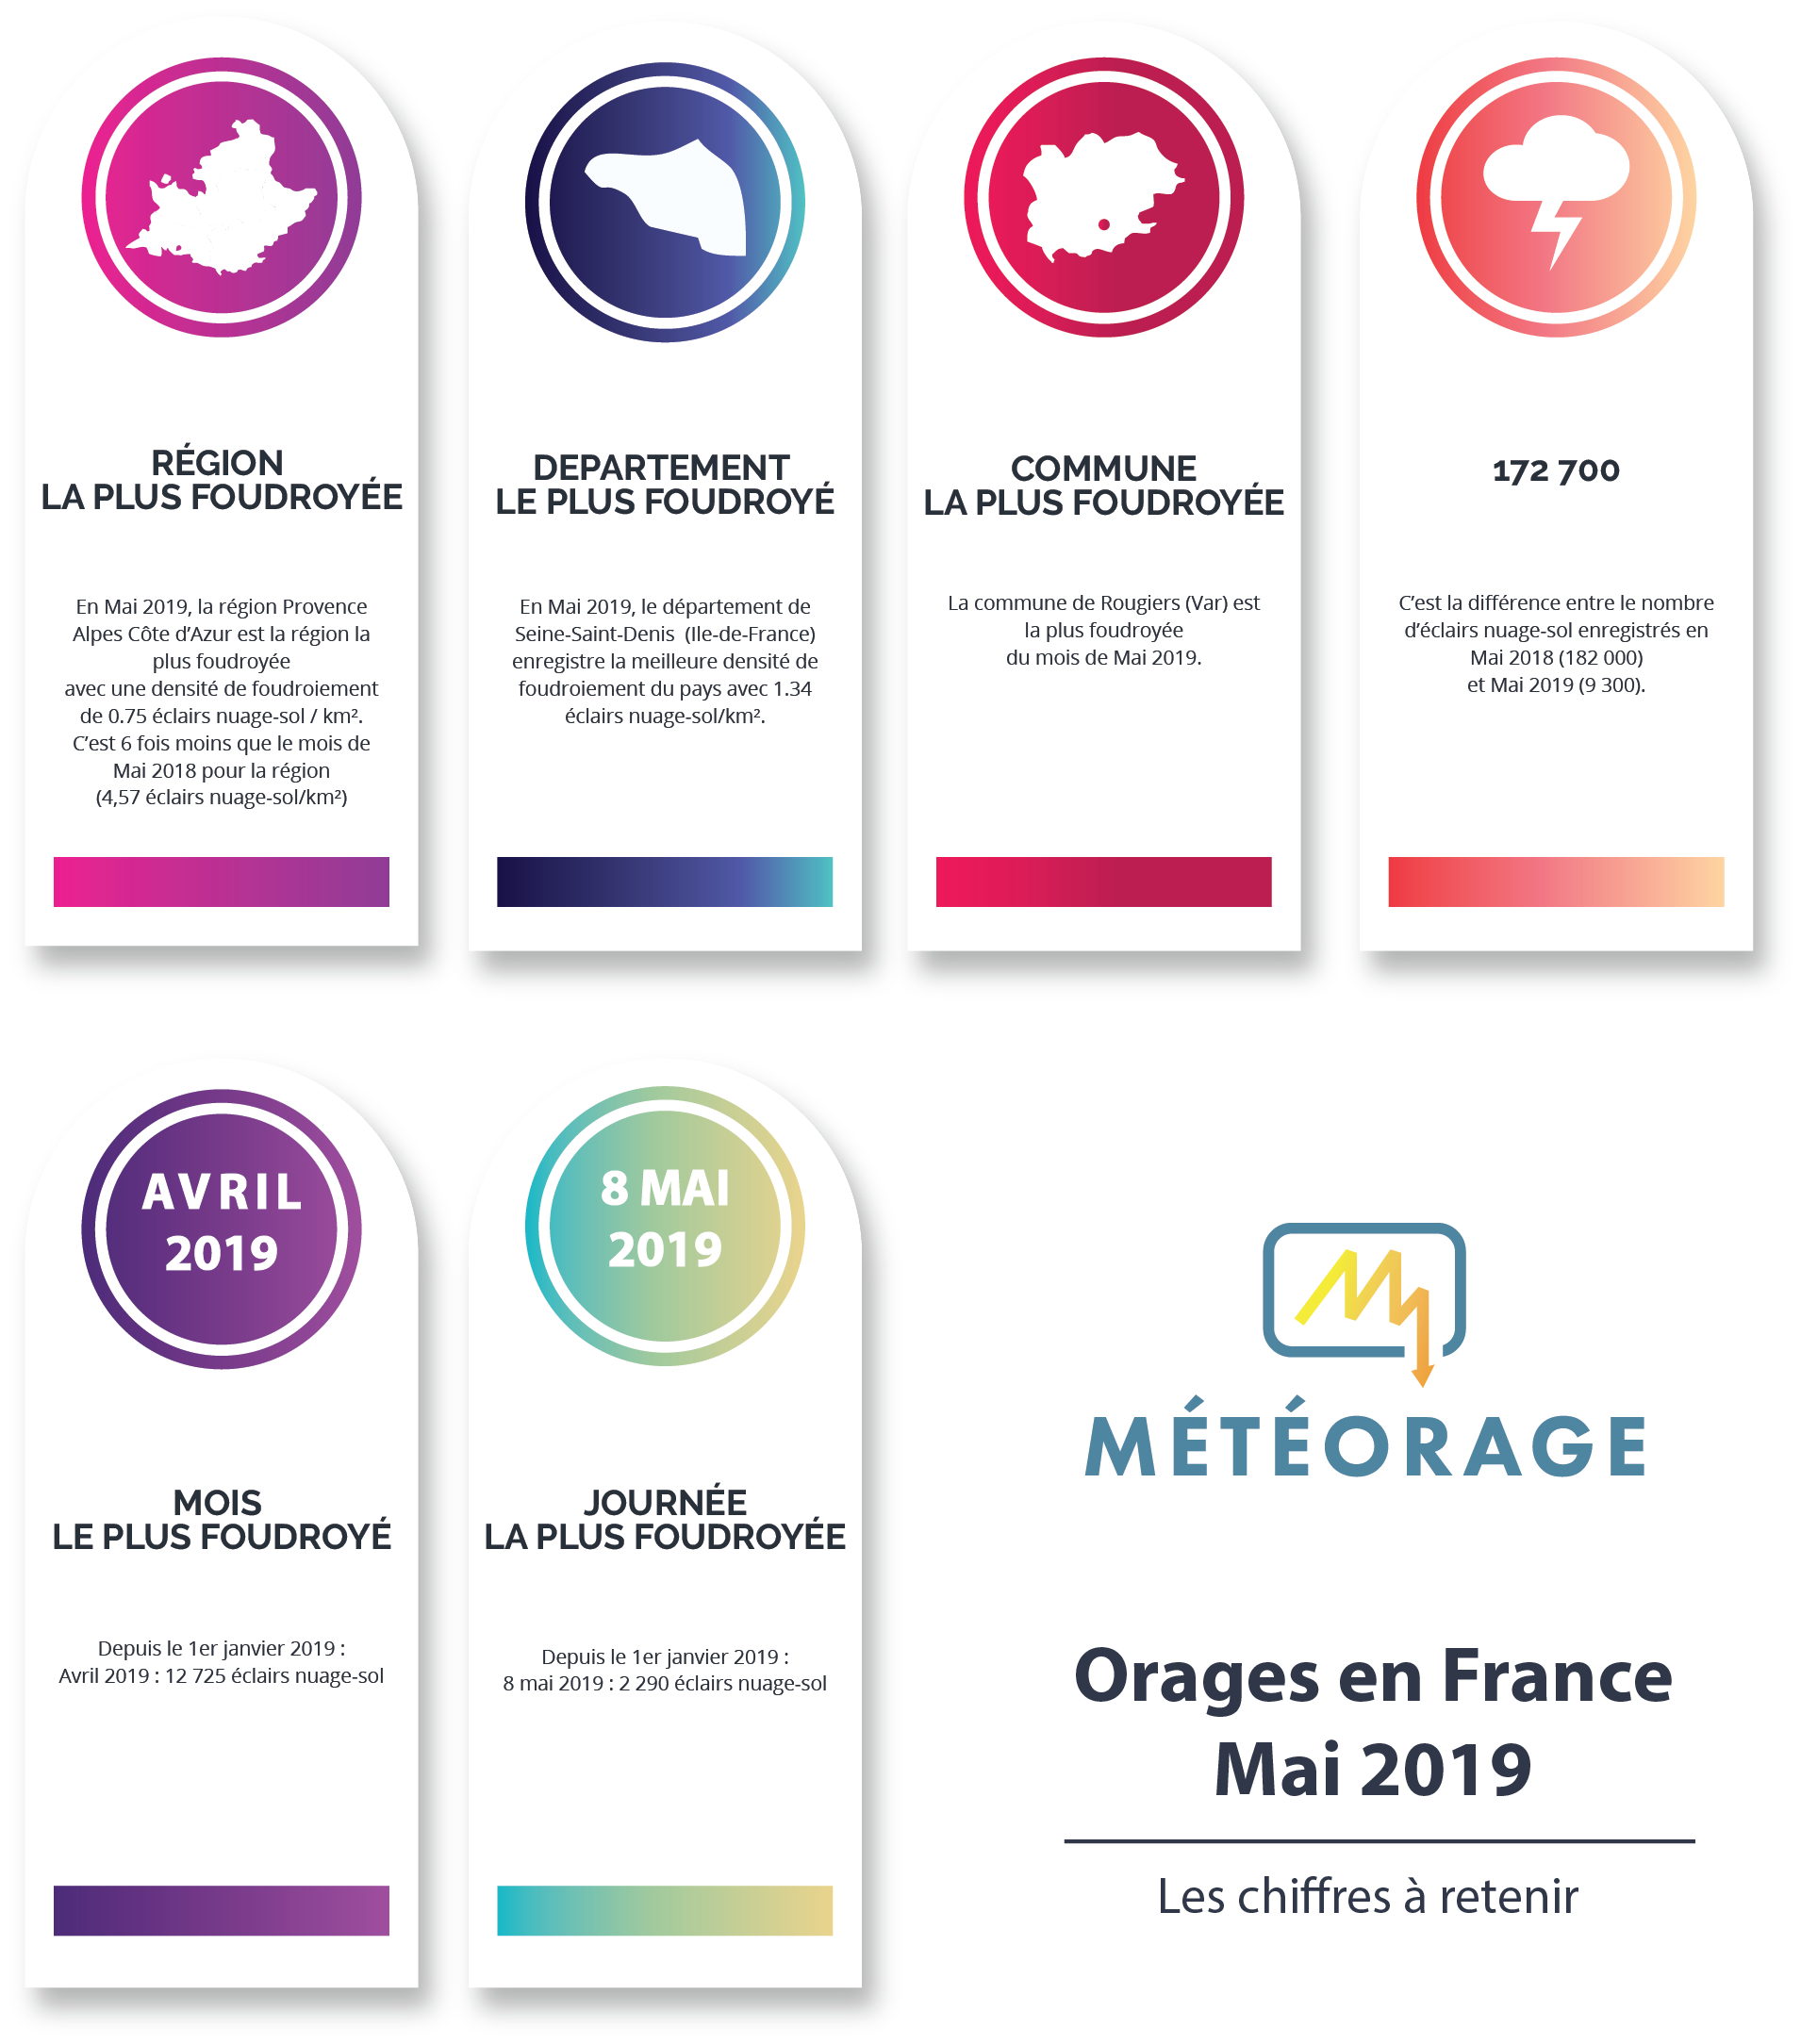 Orages en France - Mai 2019- Les chiffres clés